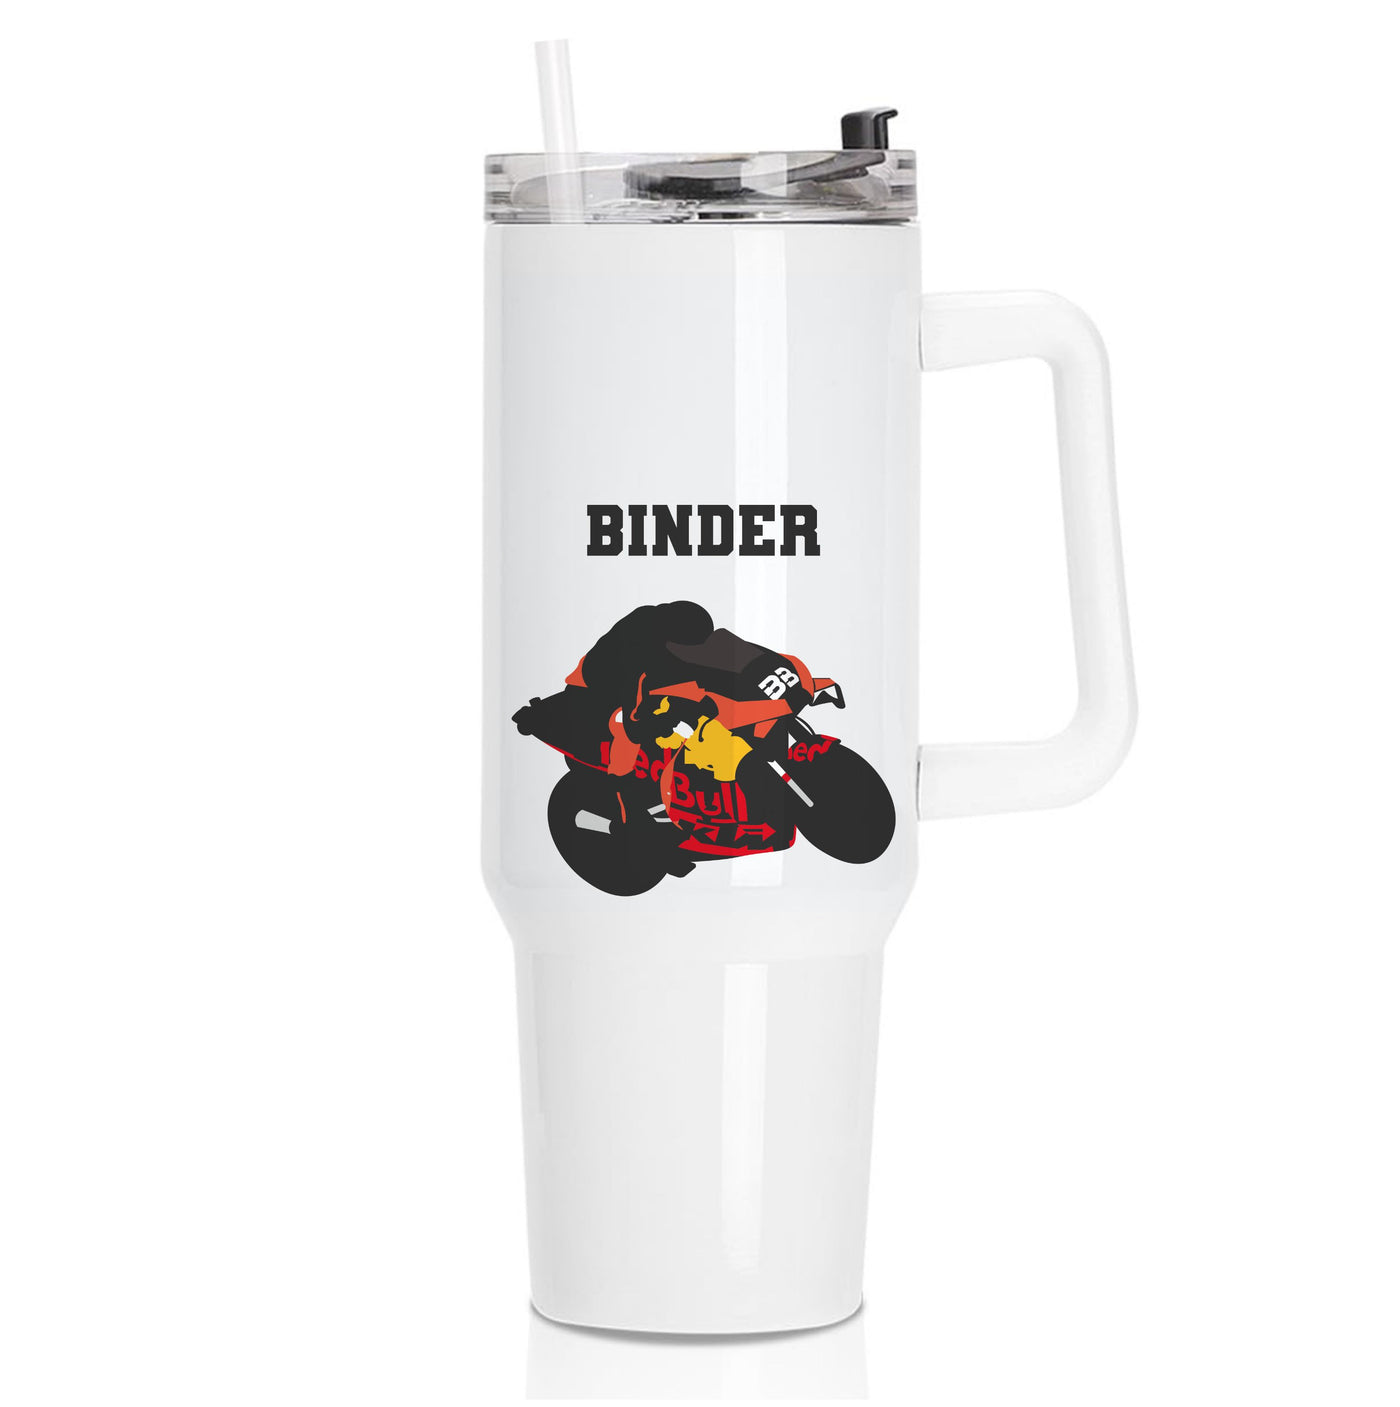 Binder - Moto GP Tumbler